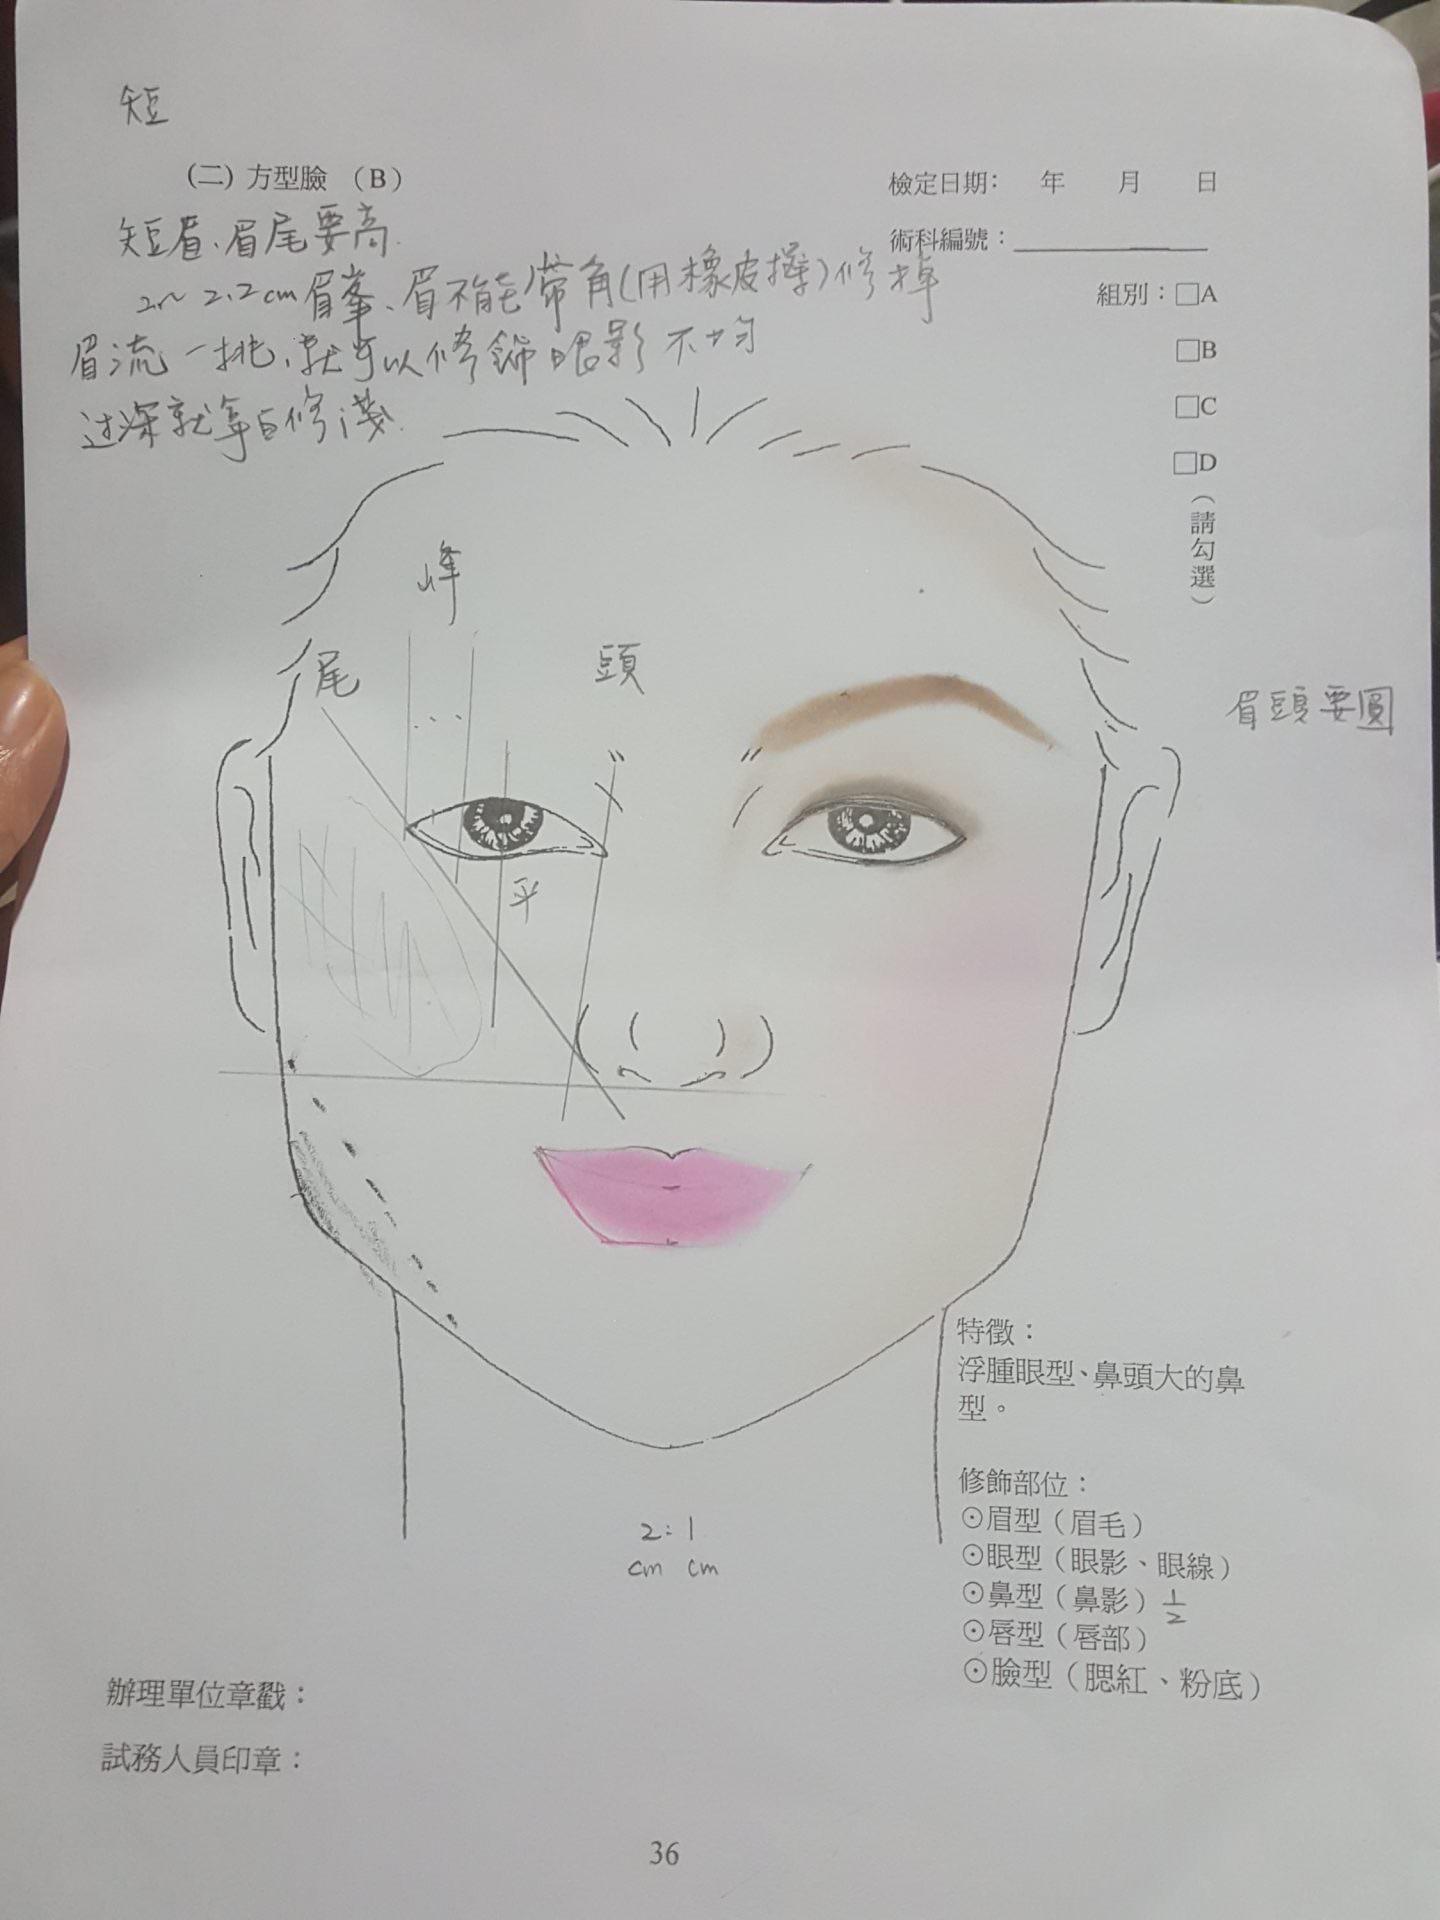 【美容】乙級證照 (二) 方形臉 (B) 浮腫眼 鼻頭大 | 乙級紙圖 考試技巧要領